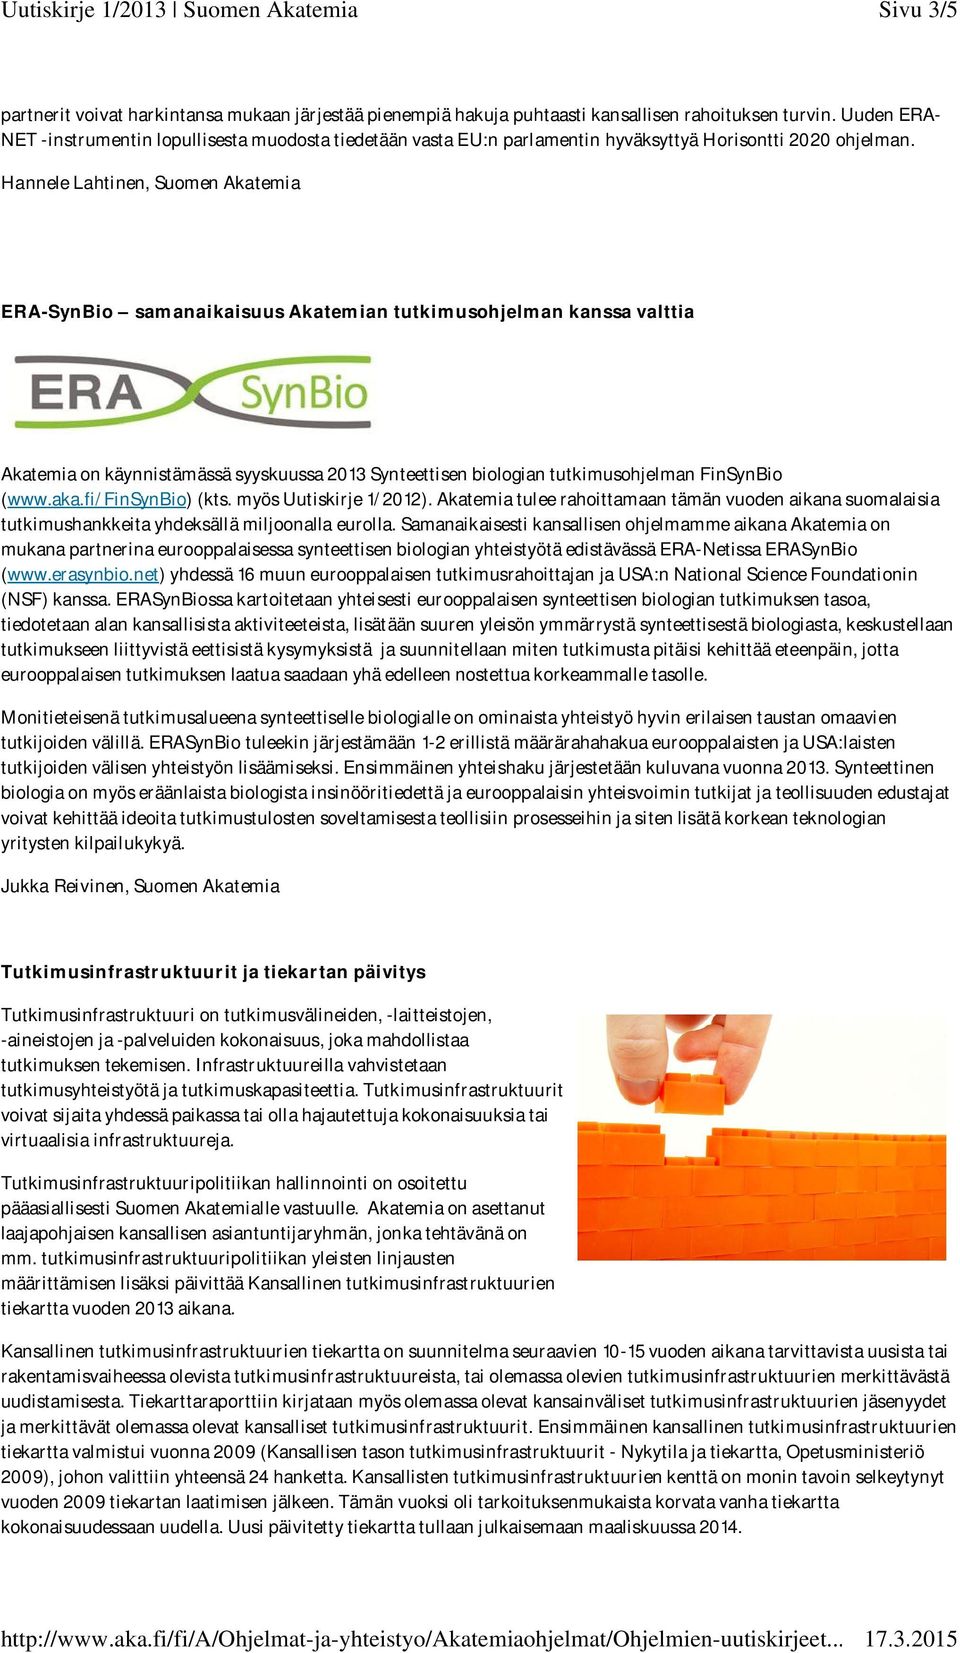 Hannele Lahtinen, Suomen Akatemia ERA-SynBio samanaikaisuus Akatemian tutkimusohjelman kanssa valttia Akatemia on käynnistämässä syyskuussa 2013 Synteettisen biologian tutkimusohjelman FinSynBio (www.